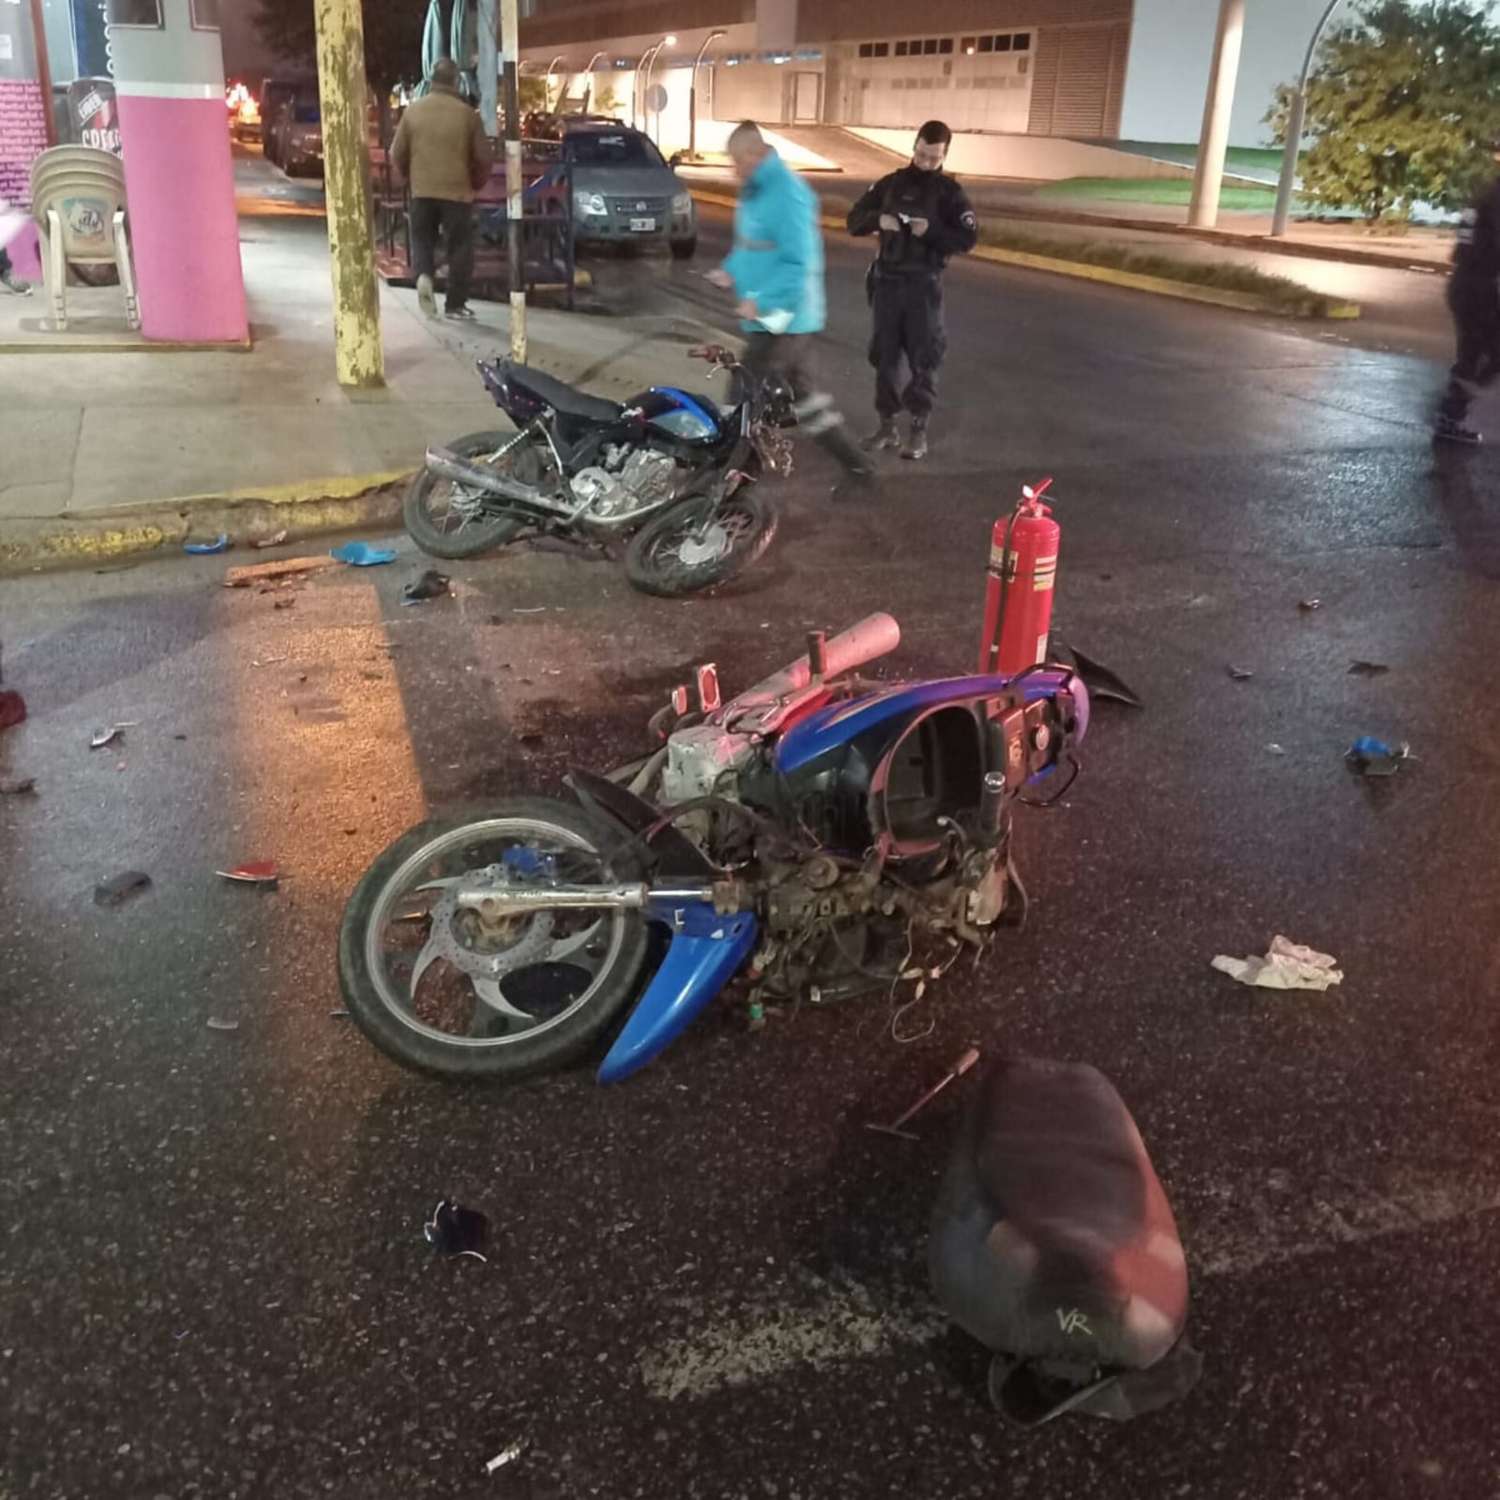 Hace menos de un mes, un hombre de 50 años perdió la vida por un choque entre motos en el mismo lugar.